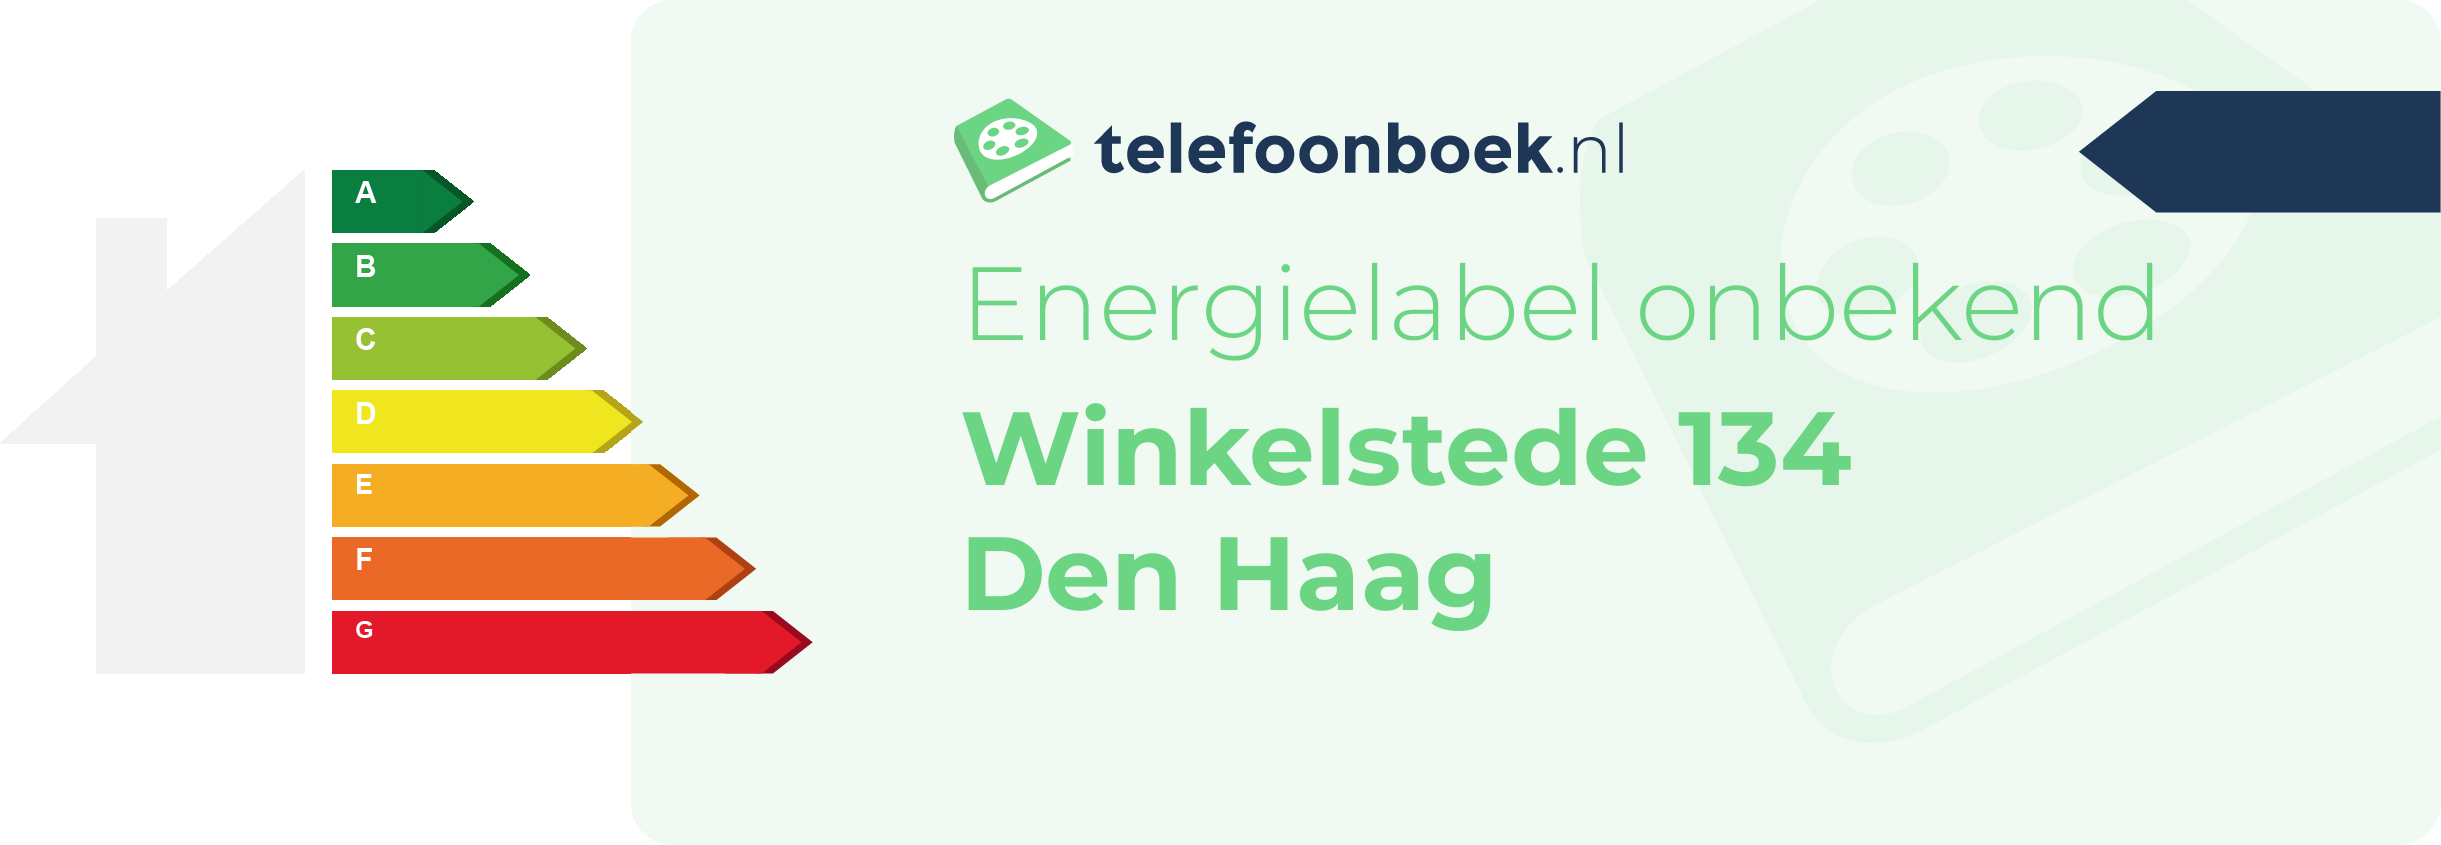 Energielabel Winkelstede 134 Den Haag